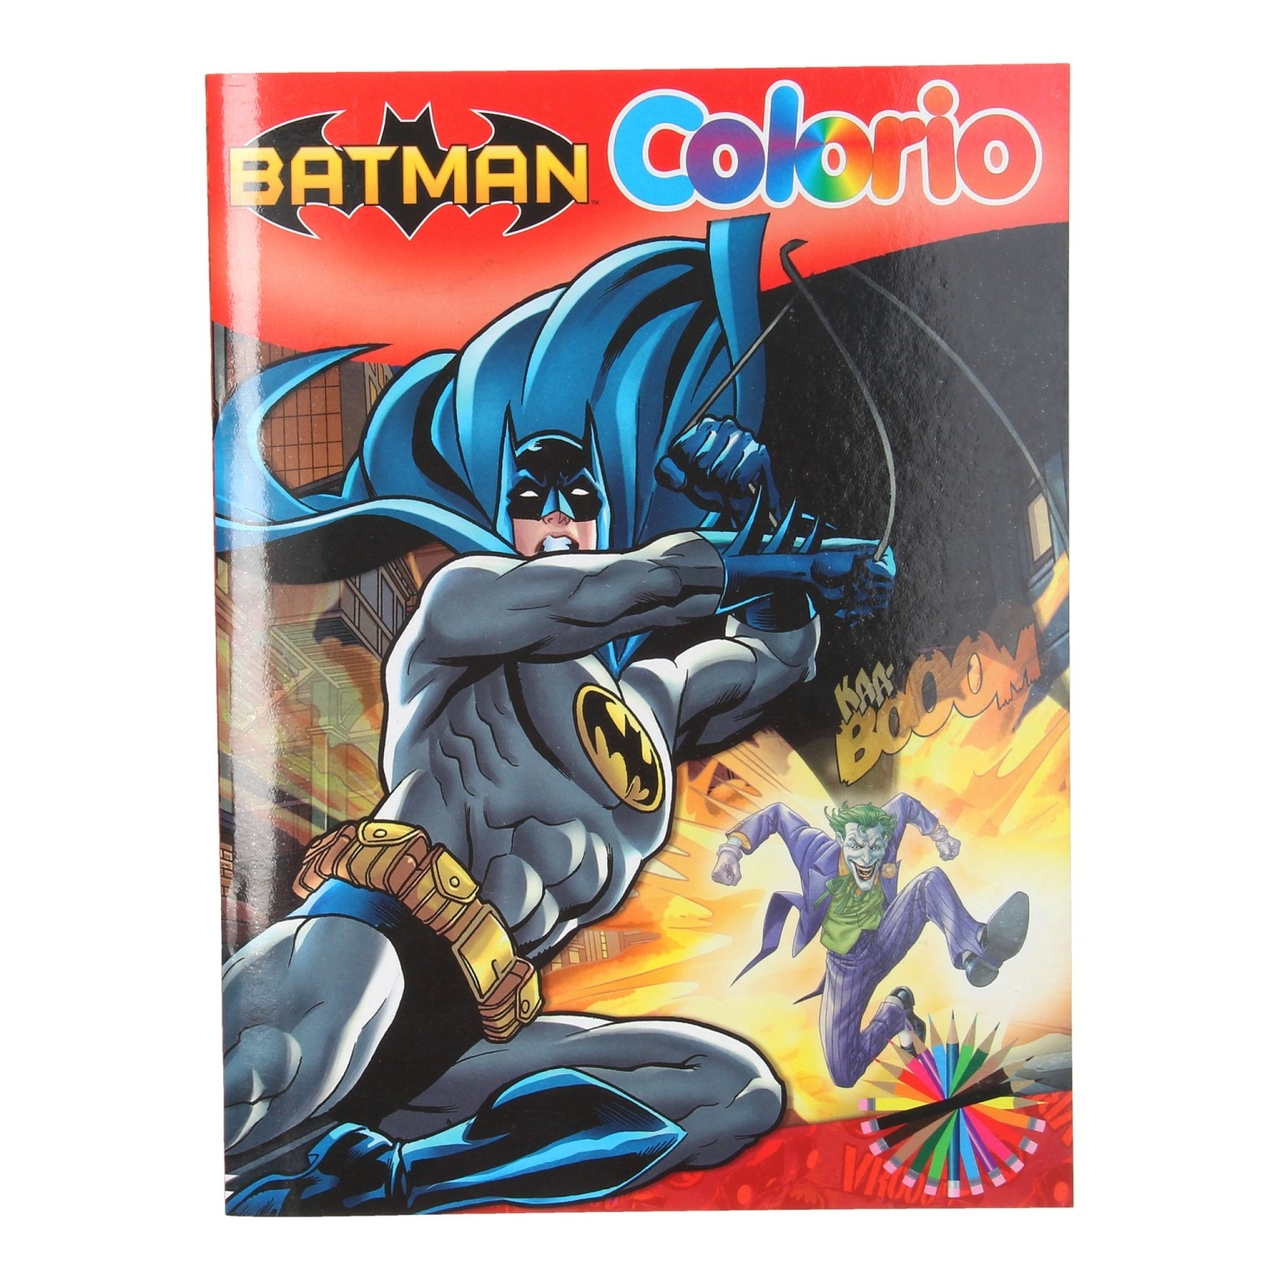 Beschuldigingen Heup overdrijving Batman Colorio - Het Speelgoedpaleis